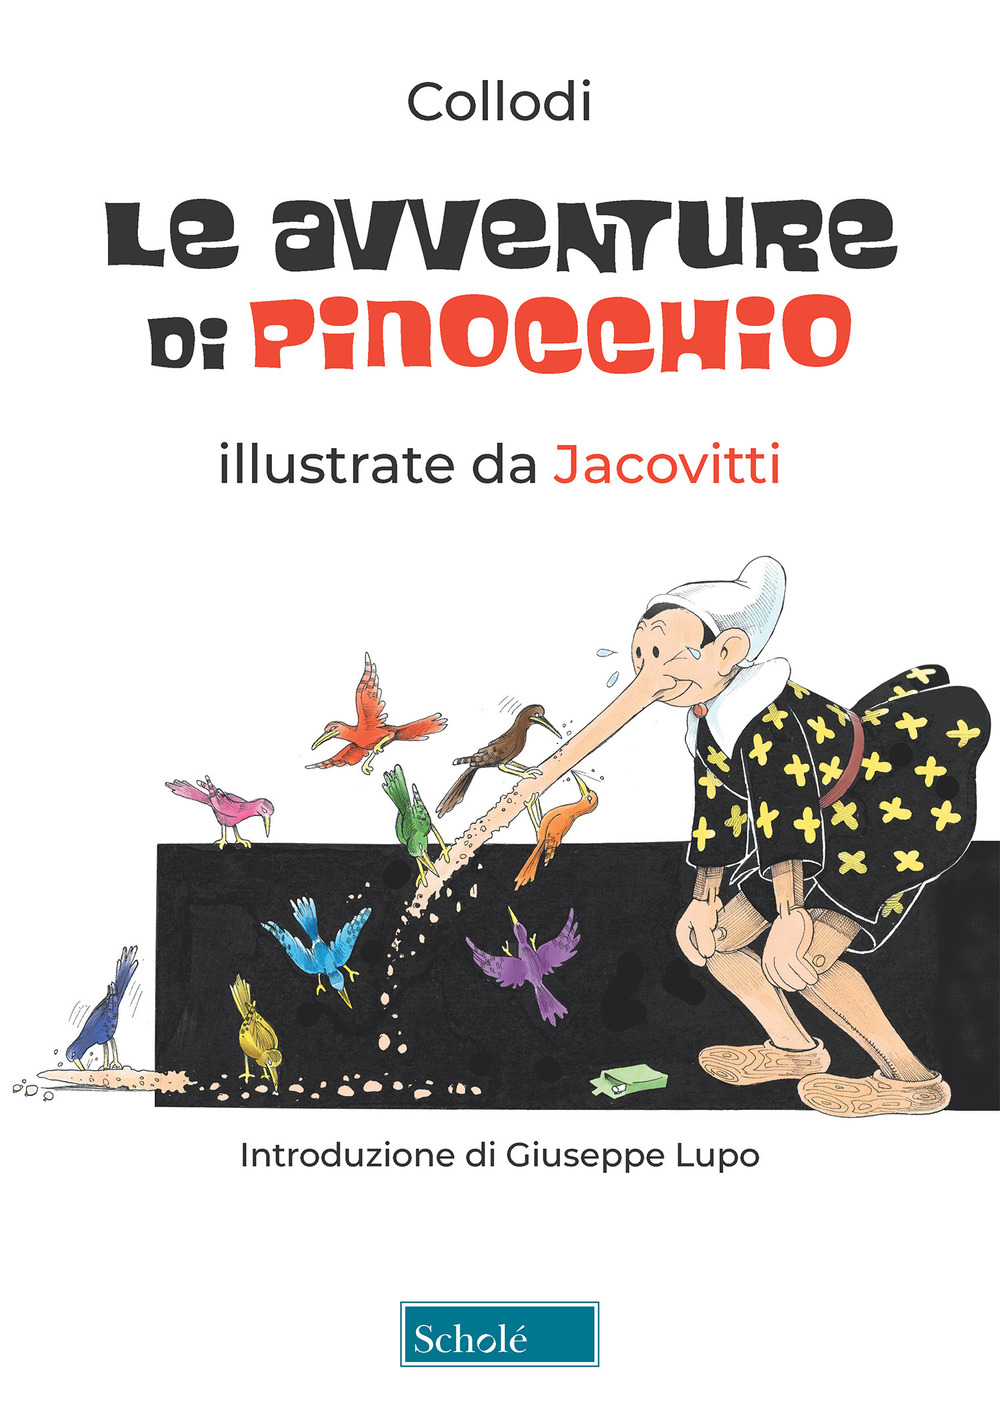 Le avventure di Pinocchio. Ediz. a colori